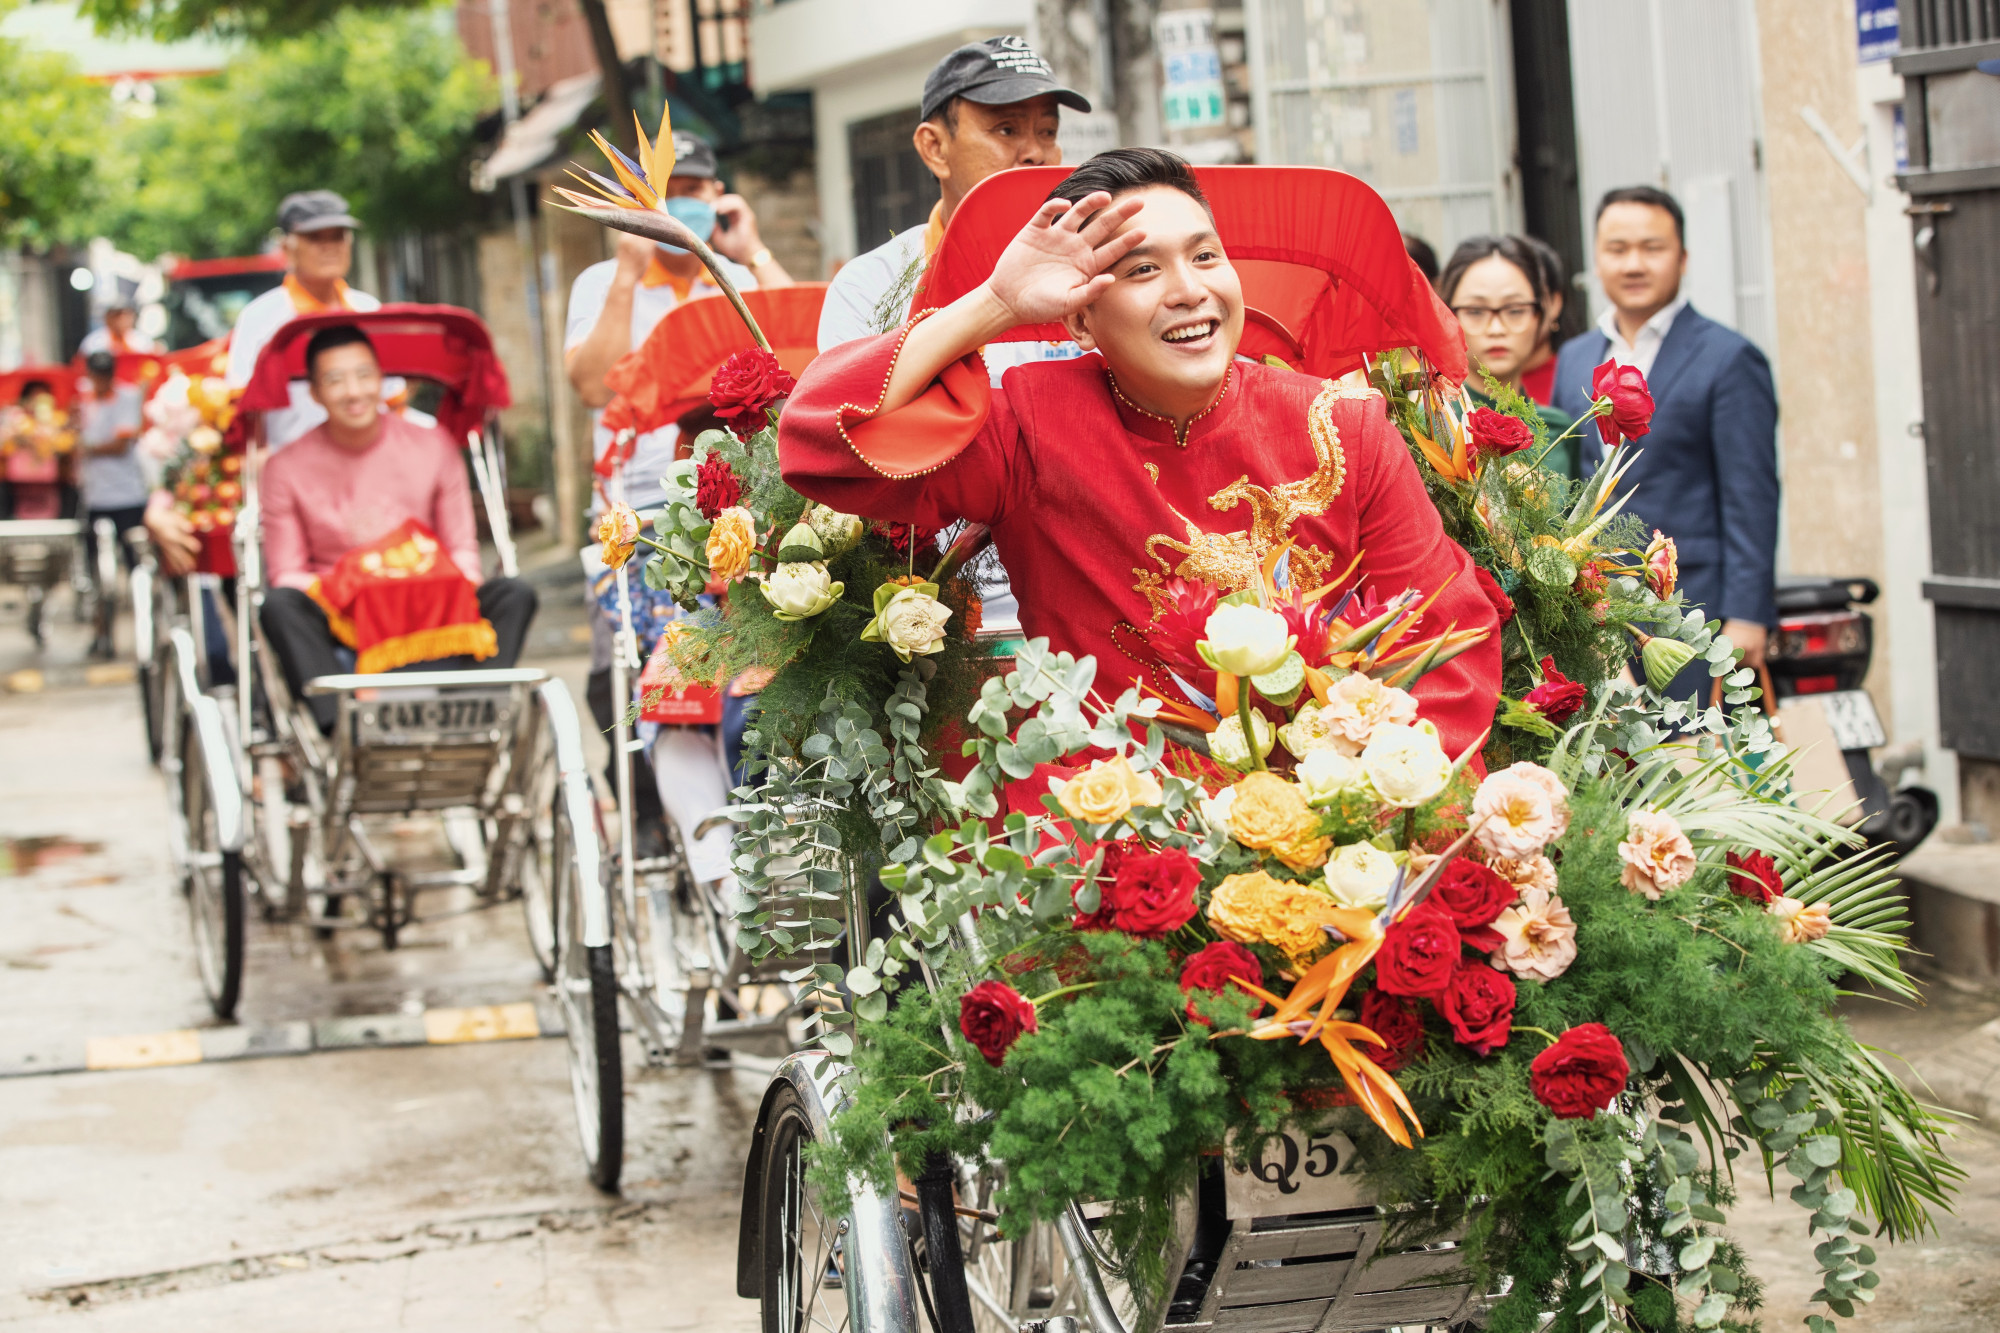 Chú rể phấn khích khi cùng đàng trai đến nhà gái để rước dâu. MC Liêu Hà Trinh chia sẻ: 'Trinh và Khoa đều có cùng khát khao về một buổi lễ gia tiên truyền thống từ trước khi gặp nhau. Bởi mình tin, dù cho có sinh ra hay lớn lên ở đâu, thì cội nguồn dân tộc, dòng máu Việt Nam vẫn chảy trong mỗi chúng ta, nhắc nhở chúng ta mãi là người Việt và tiếp nối văn hóa Việt trong niềm tự hào.